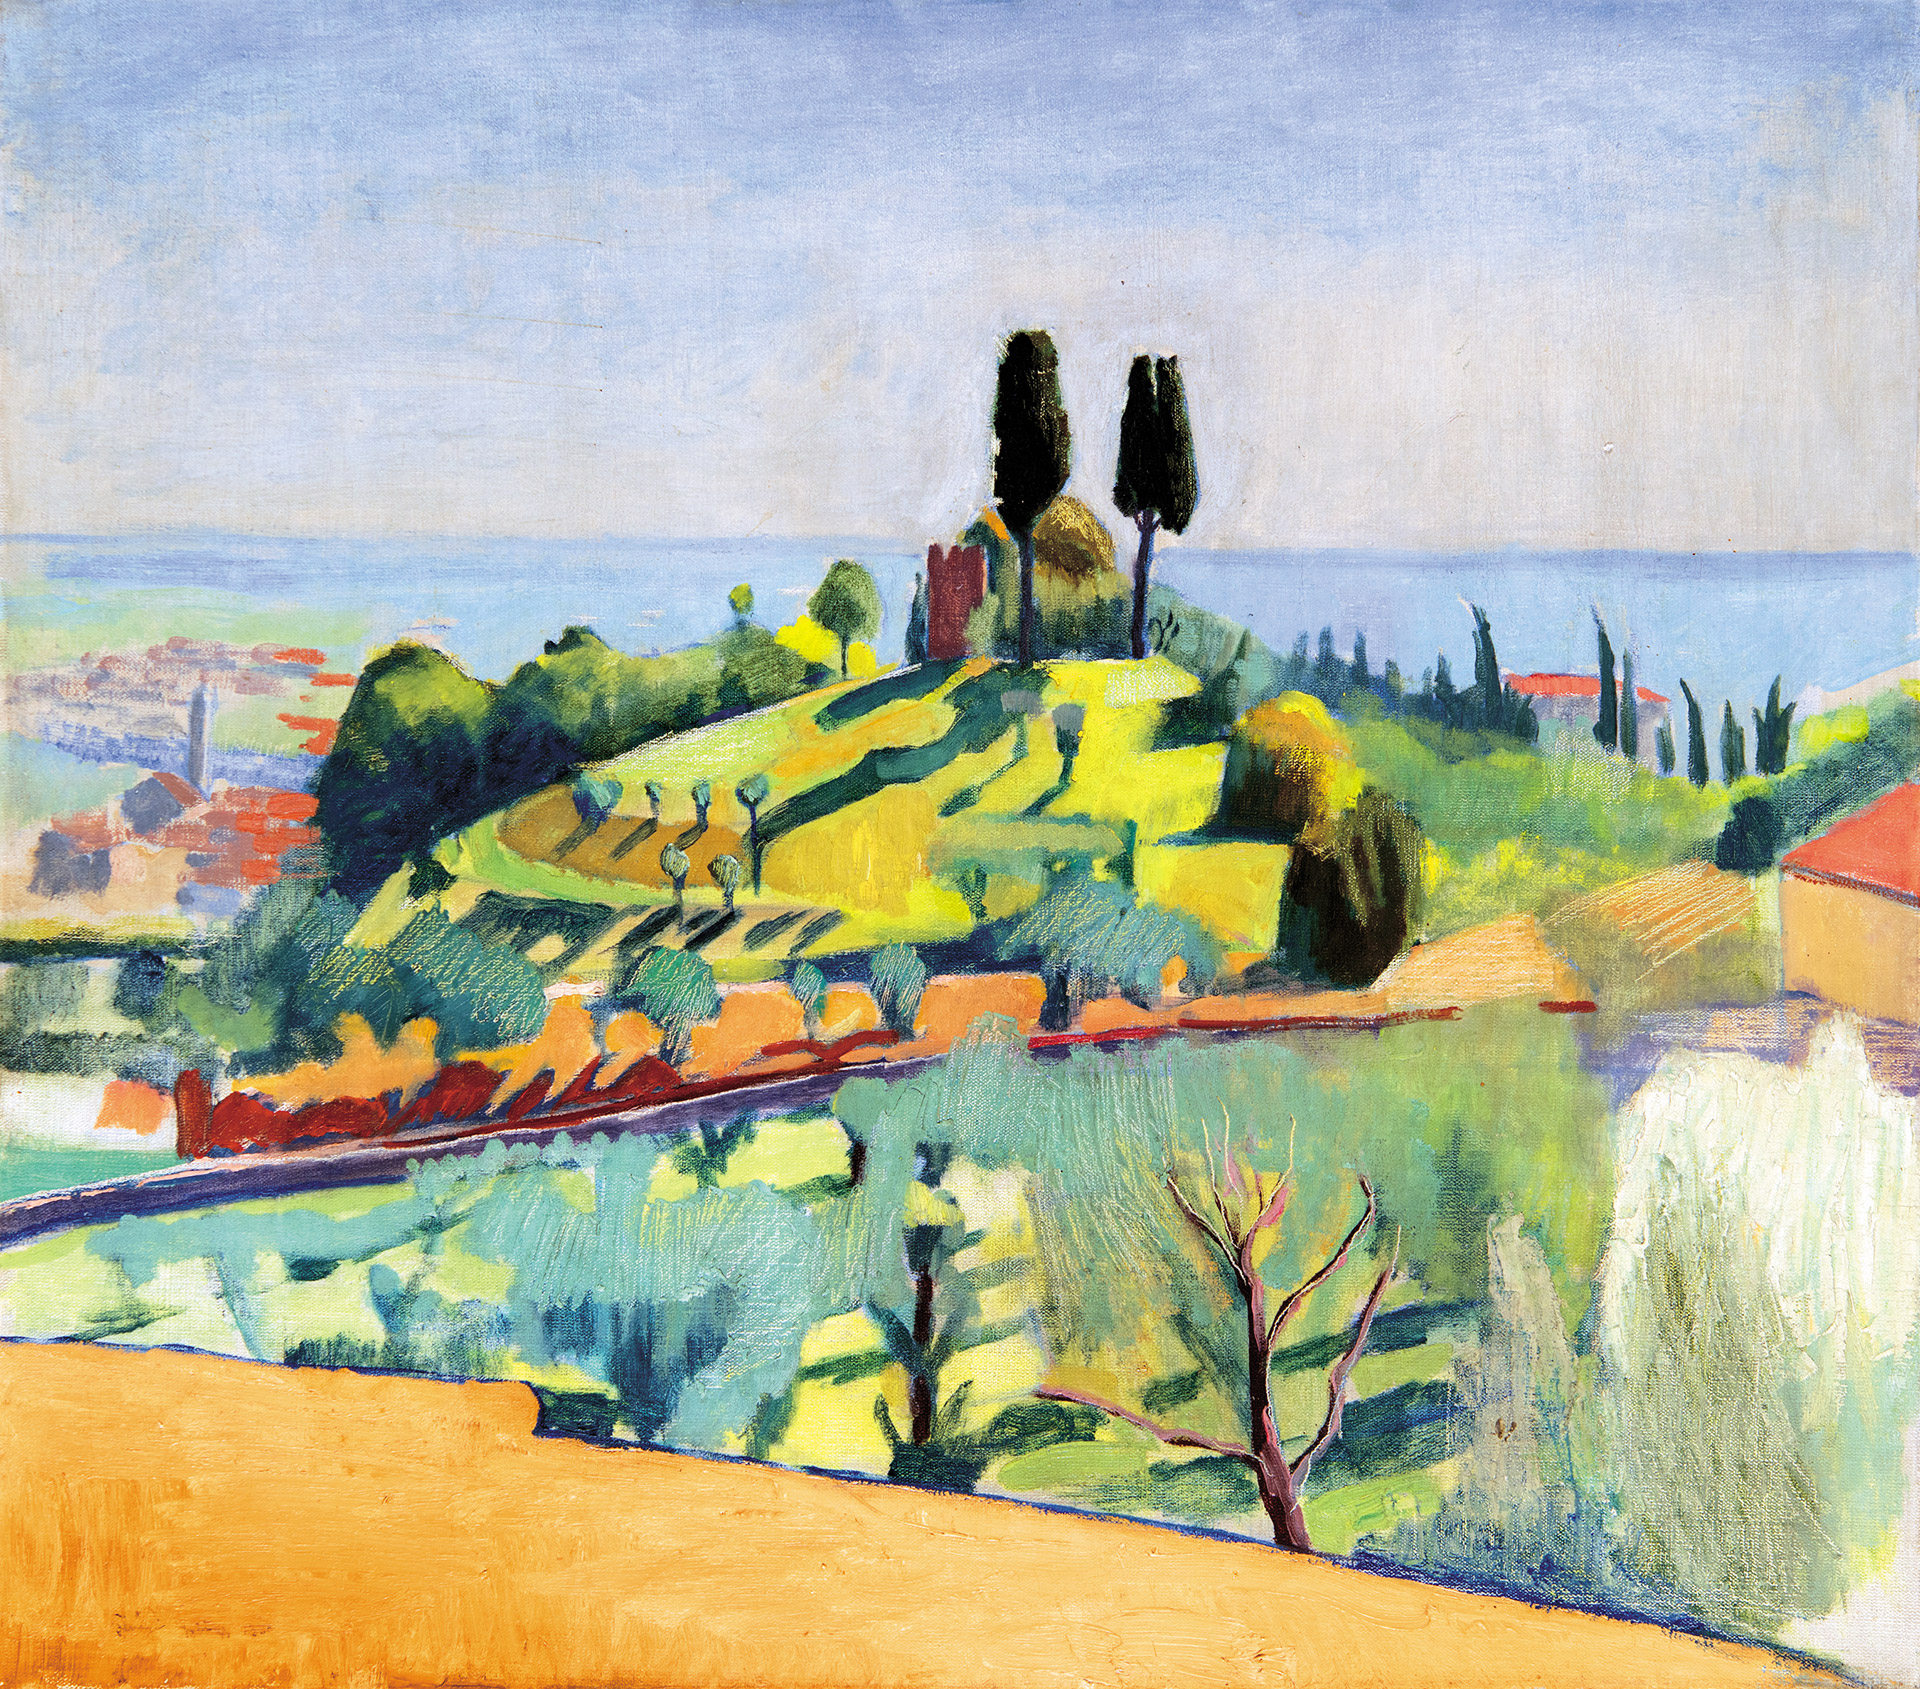 Fenyő György (1904-1978) Mediterranean Scenery, 1930